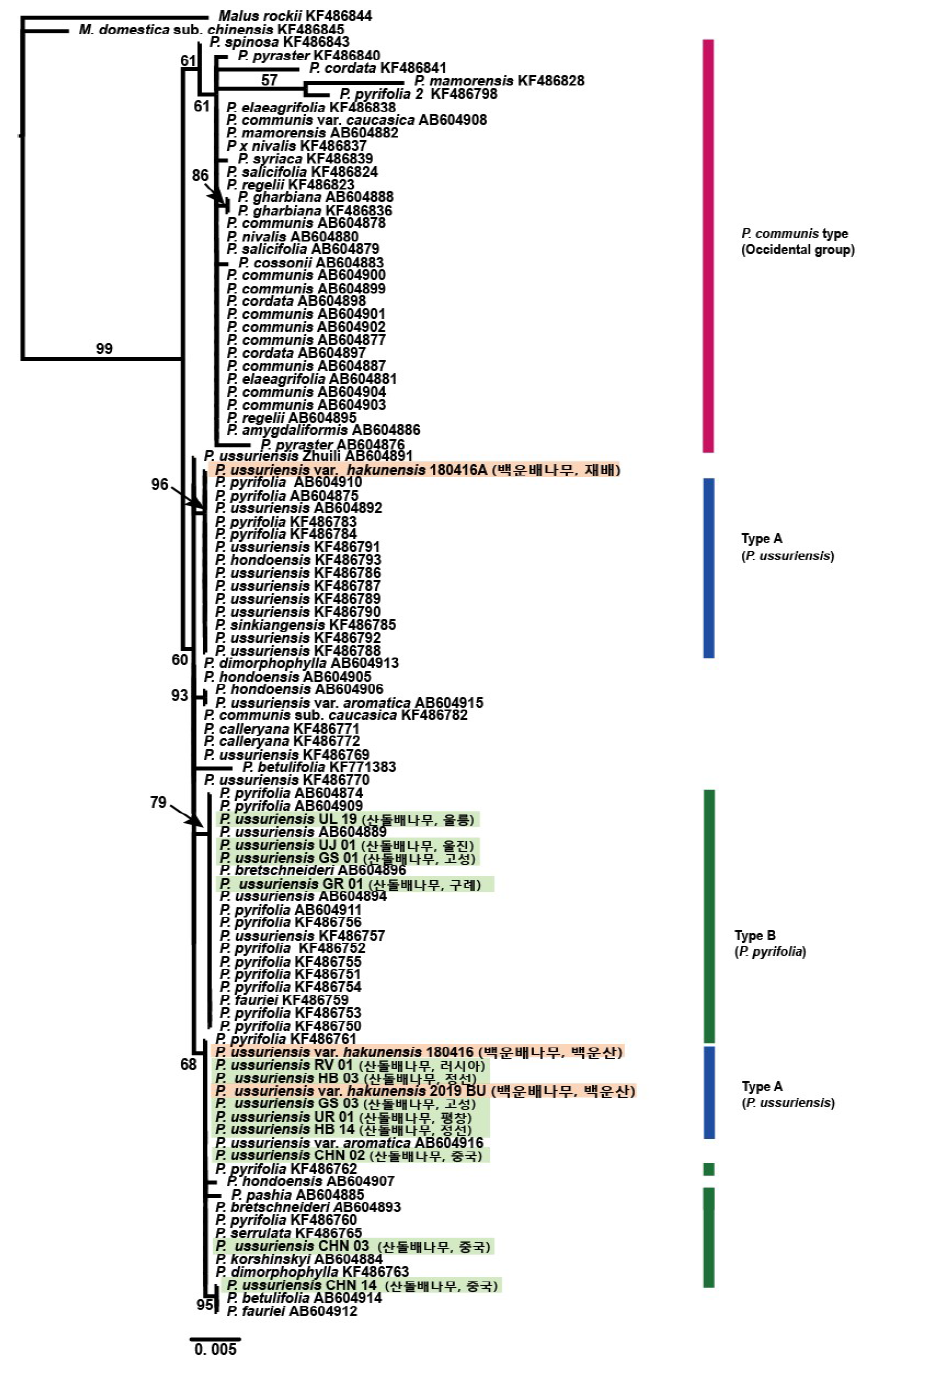 엽록체 DNA accD-psaI 구간 염기서열을 기반으로 한 배나무속 Maximum Likelihood 계통분석